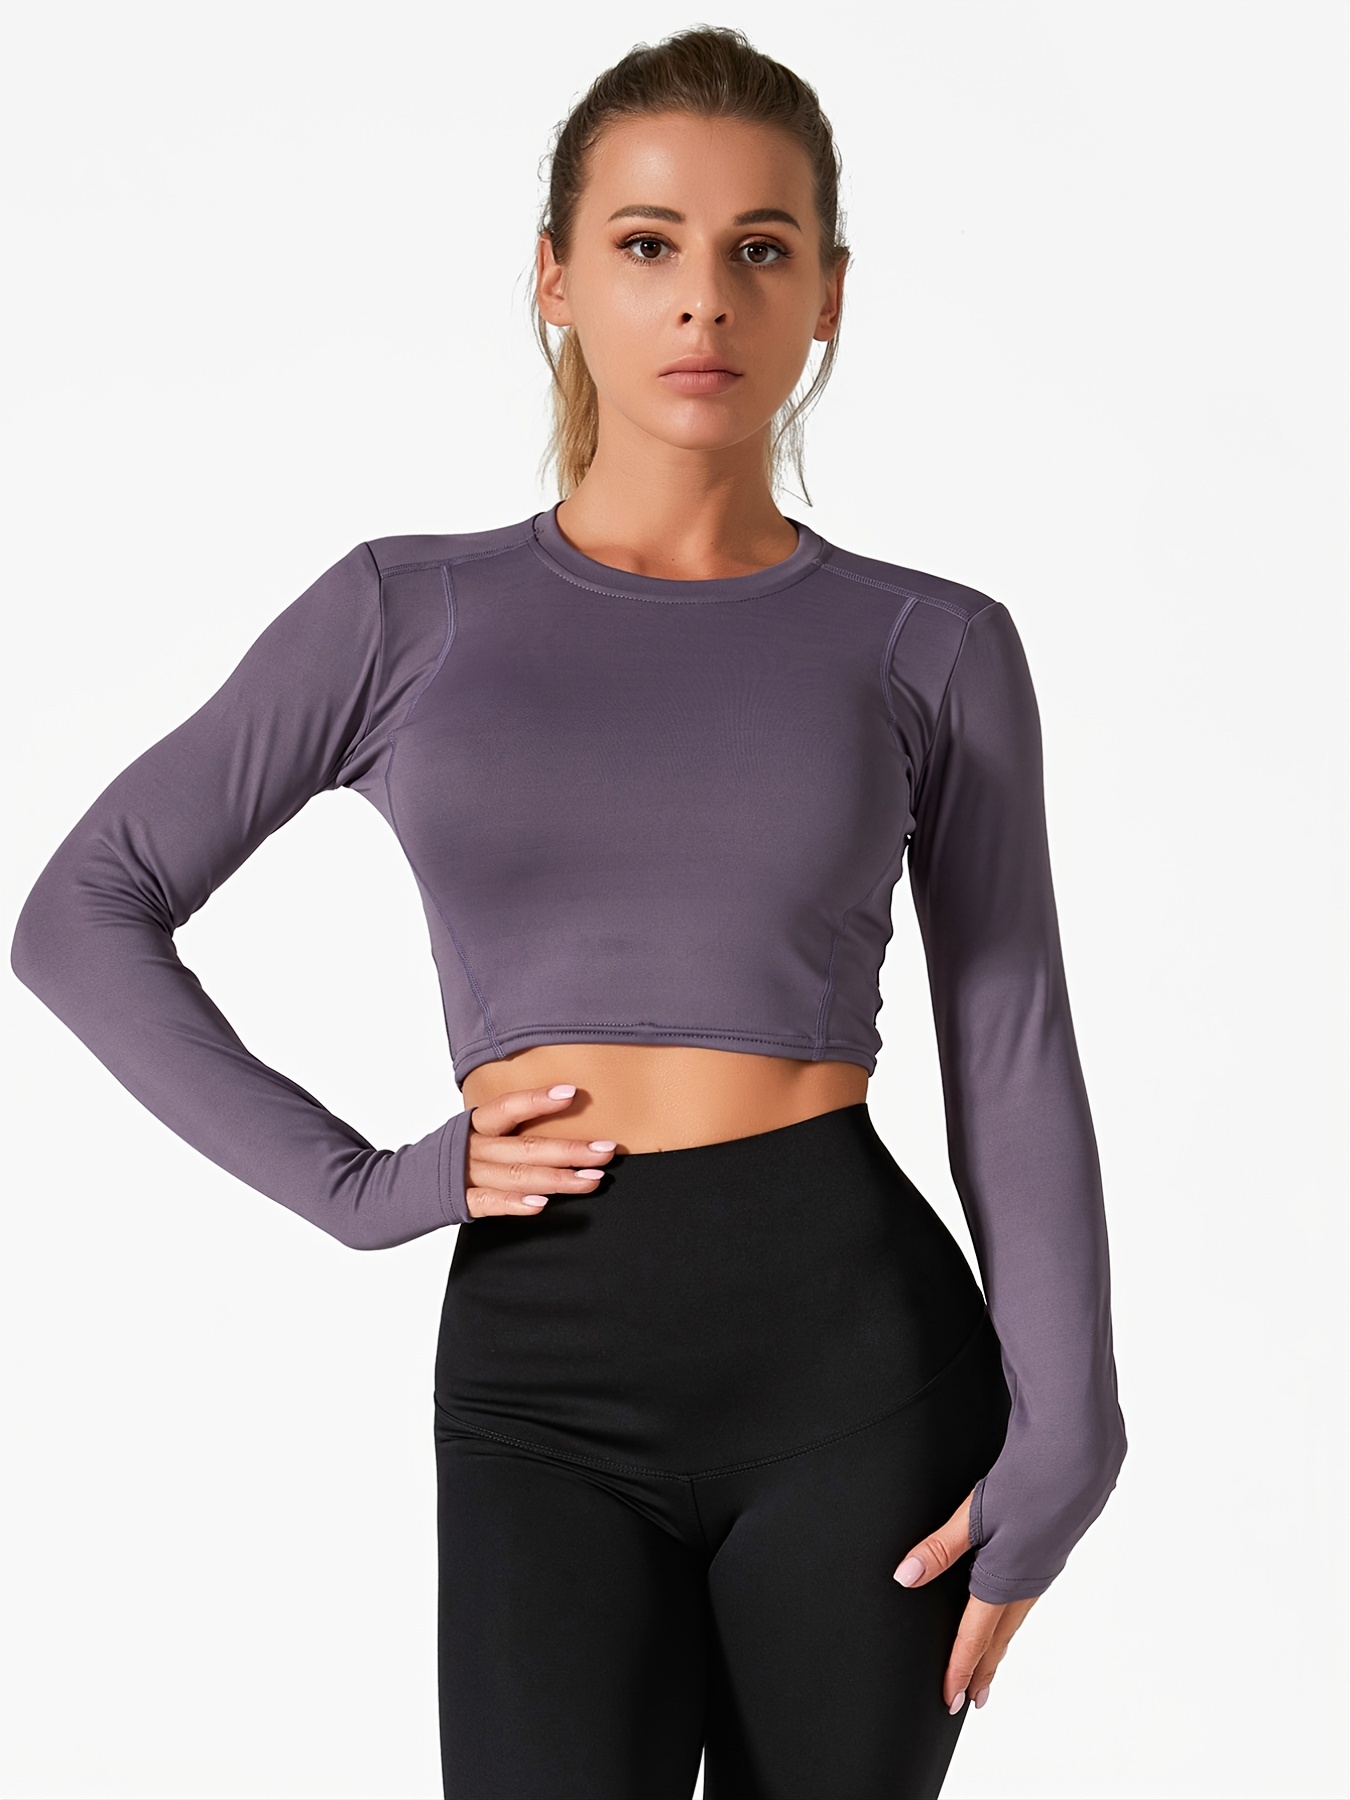 SEASUM Crop Top Sport Femme Manche Longue avec Trou pour Les Pouces,  Anti-Cellulite Yoga T-Shirt Wrap Hauts Sportswear